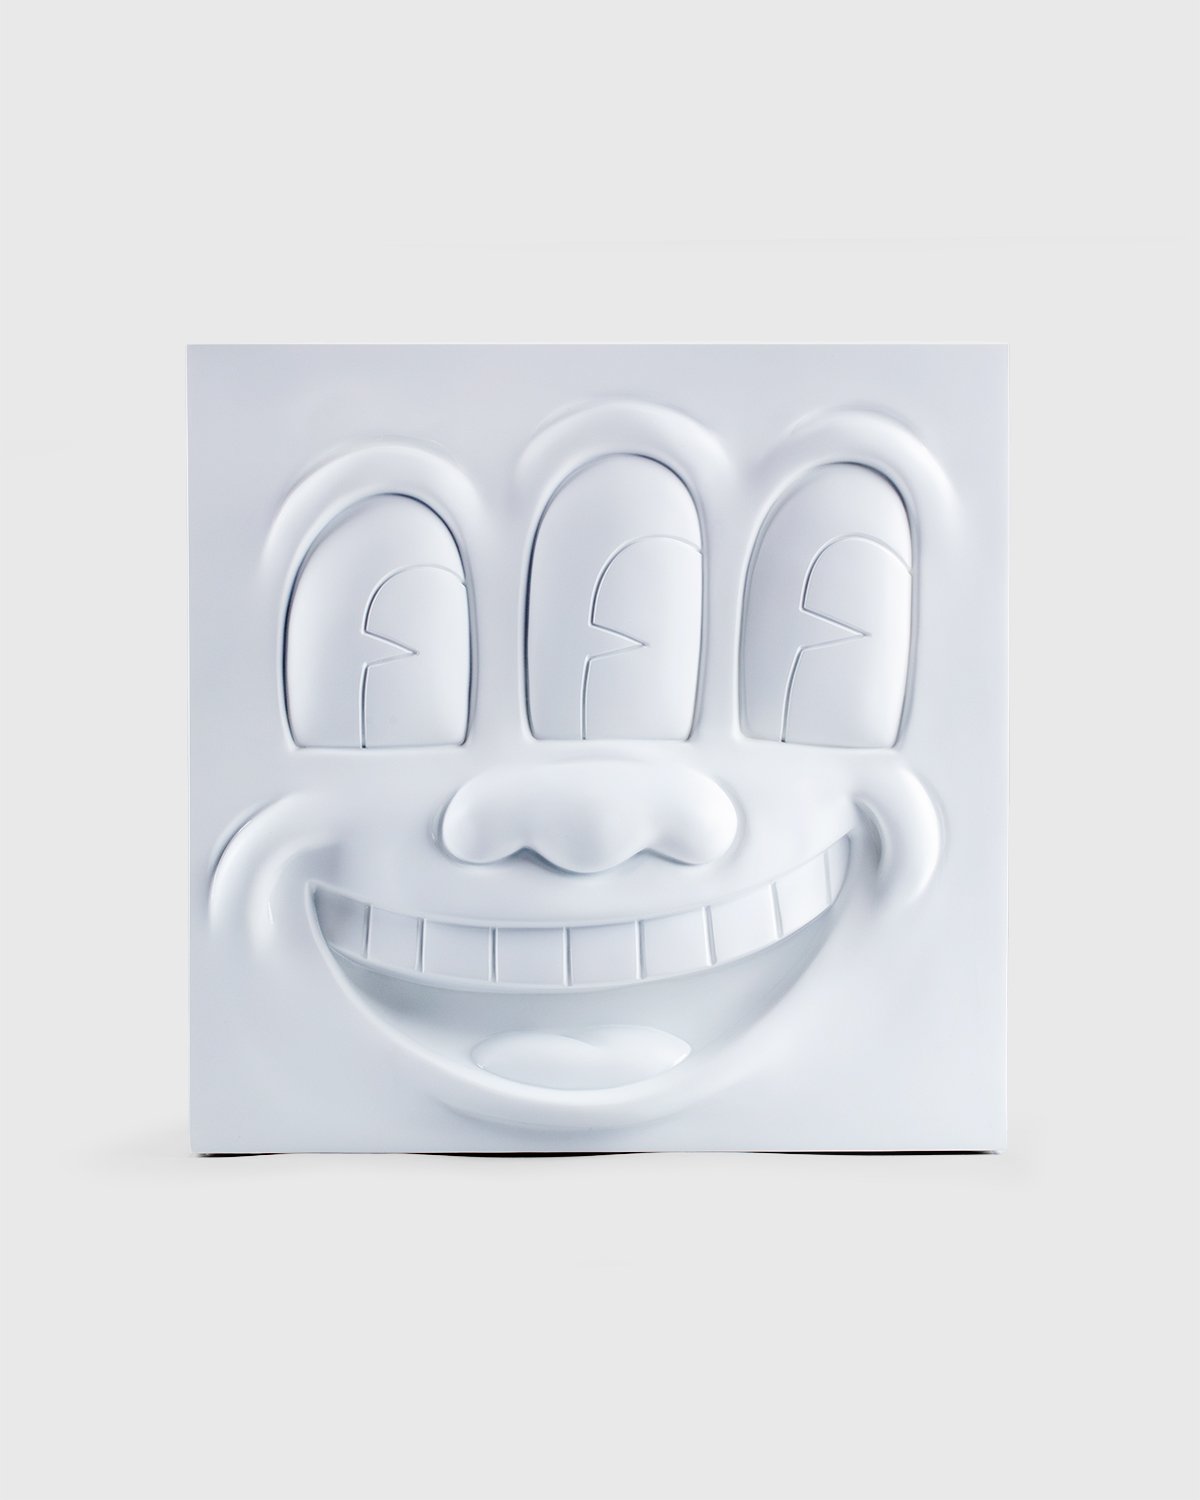 Medicom - Keith Haring Three Eyed Smiling Face Statue White - Lifestyle - White - Image 1